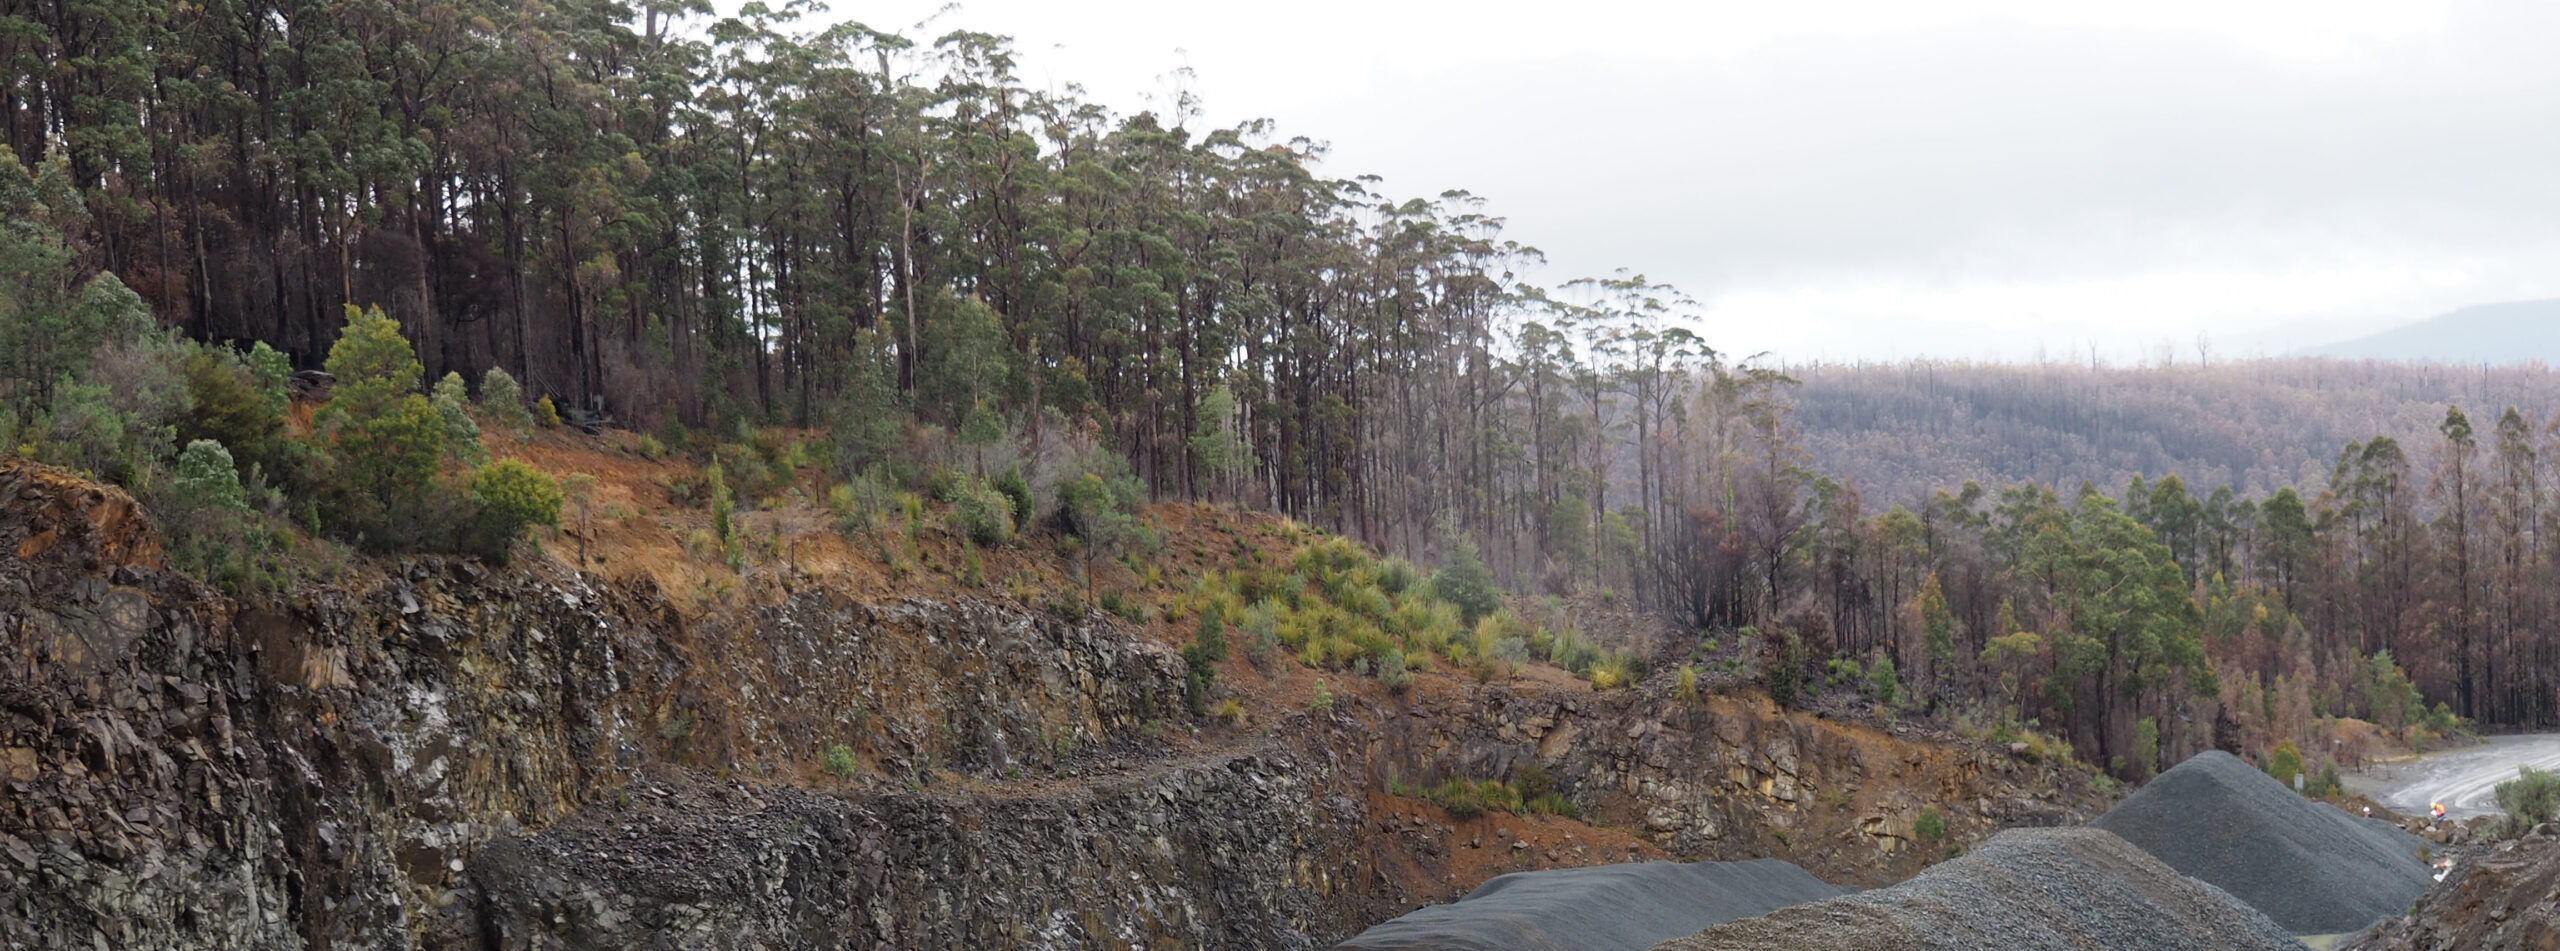 Tasmanian logging forest